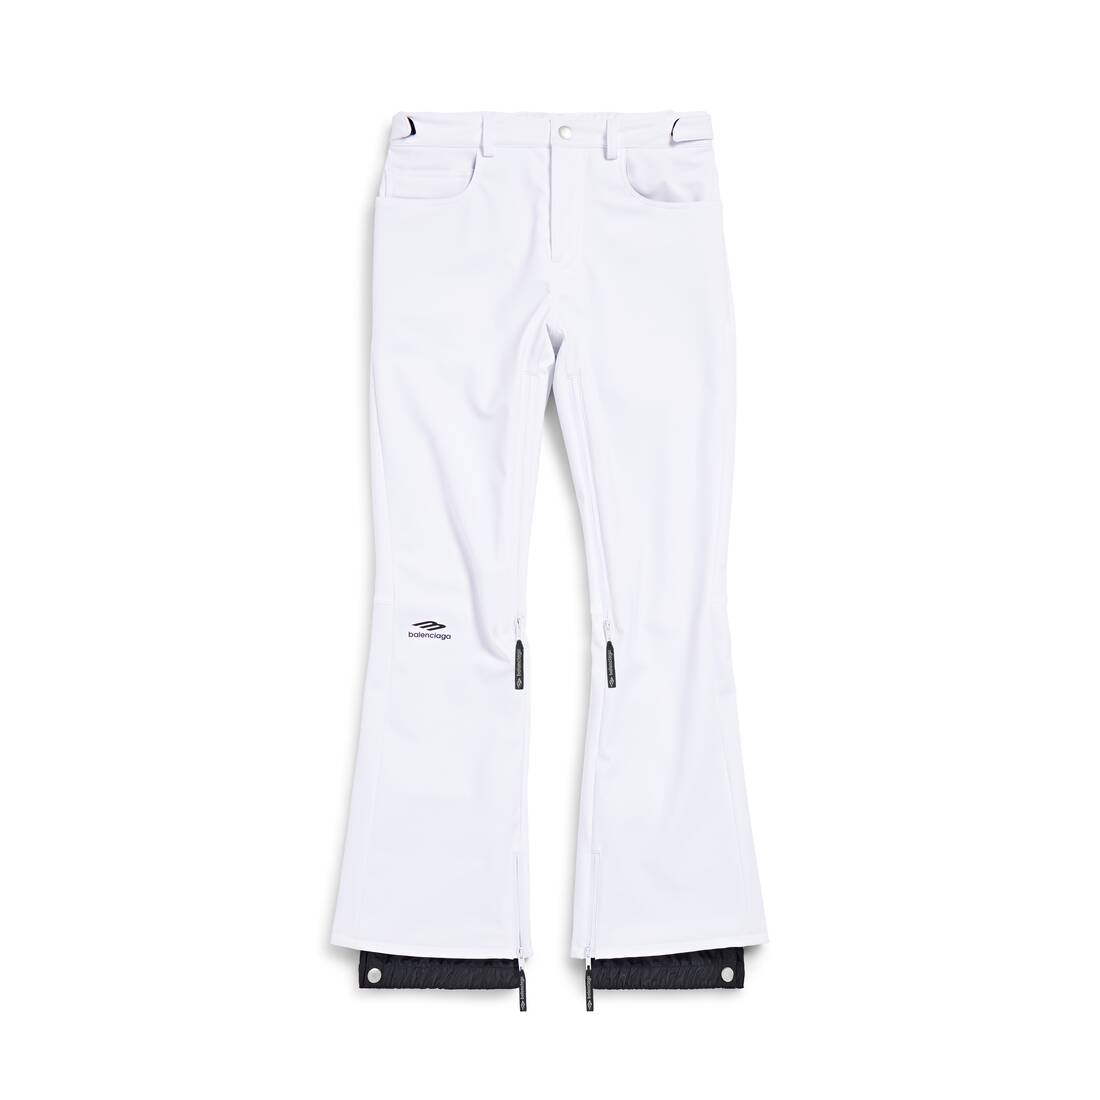 Skiwear - 3b sports icon 5-pocket ski pants